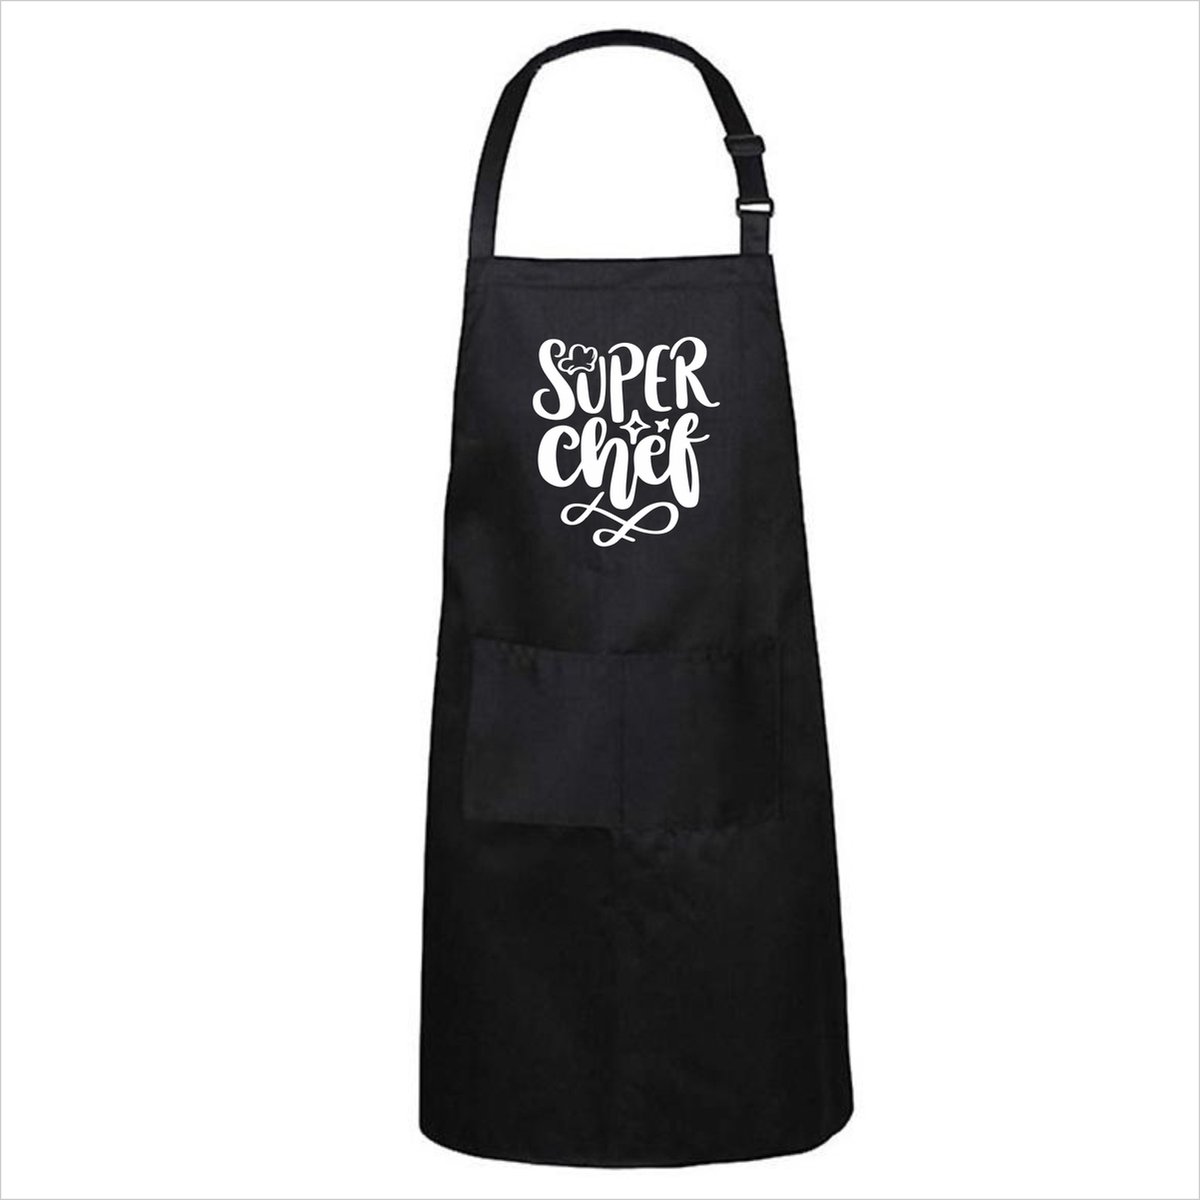 Keukenschort Superchef - One Size - Zwart - cadeau voor hem - cadeau voor haar - cadeau voor vriendin - cadeau voor vriend - keukenschort met tekst